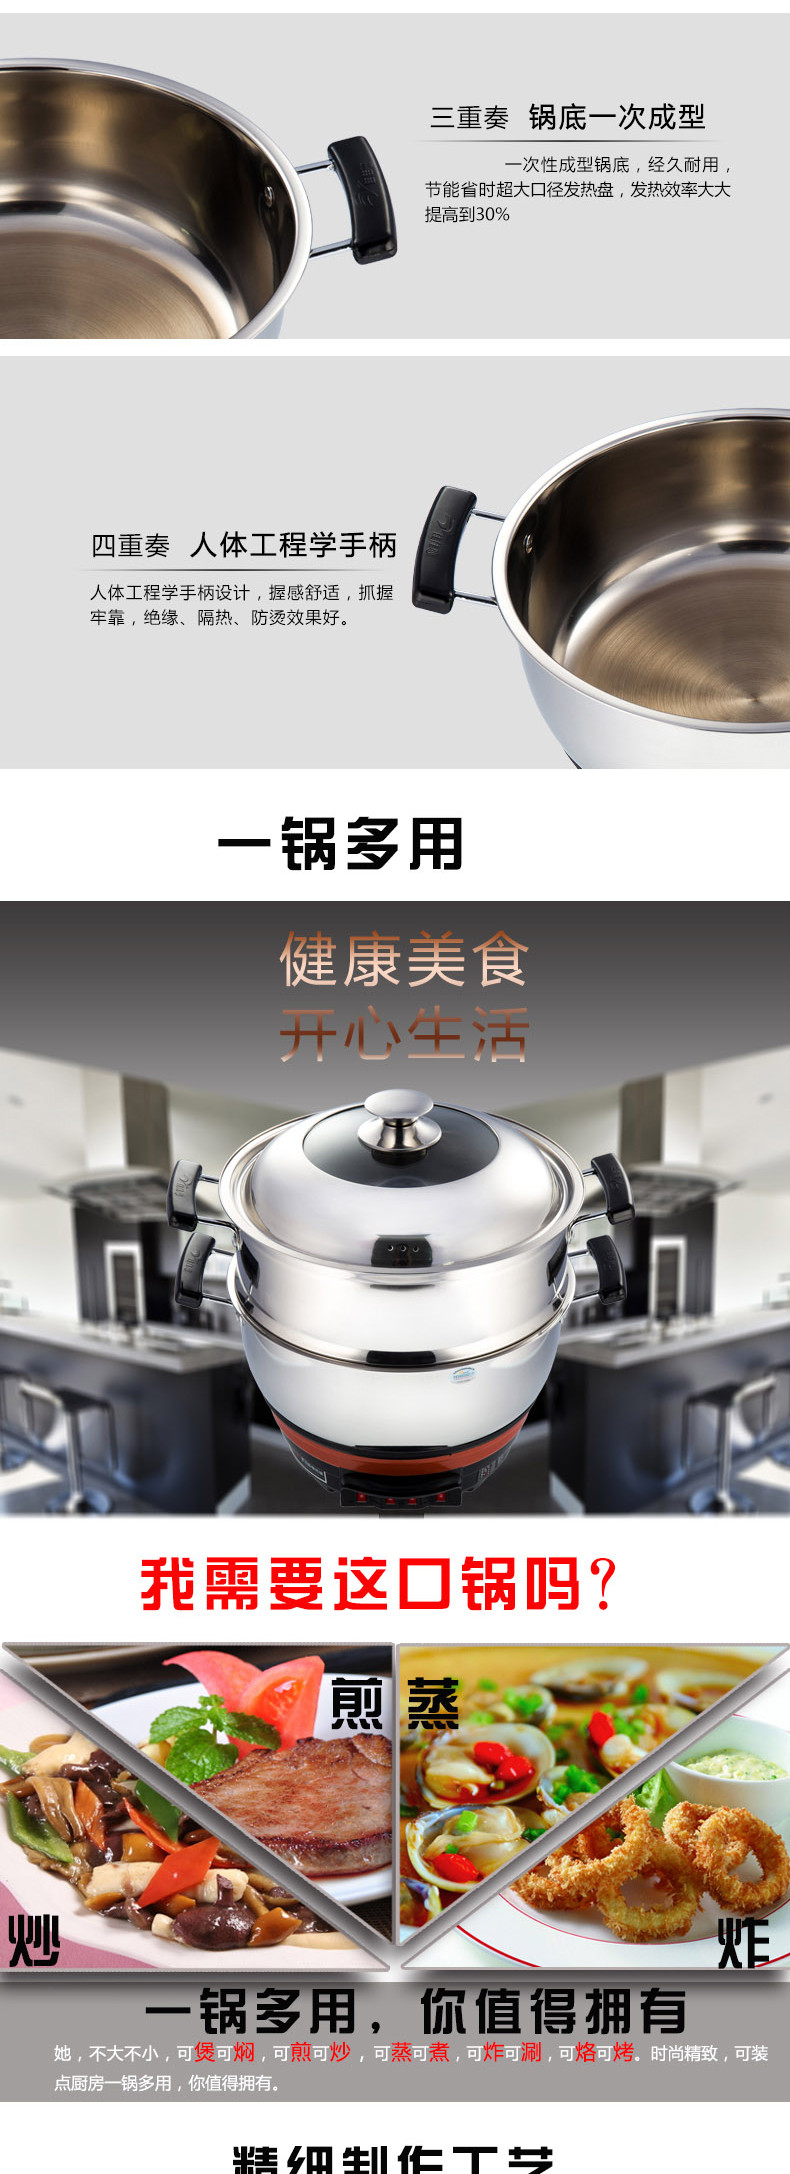 佳佳恋多功能单格电热锅28CM  JJLDG-28 4L 食品级不锈钢材质中国质造烧水壶食品级304